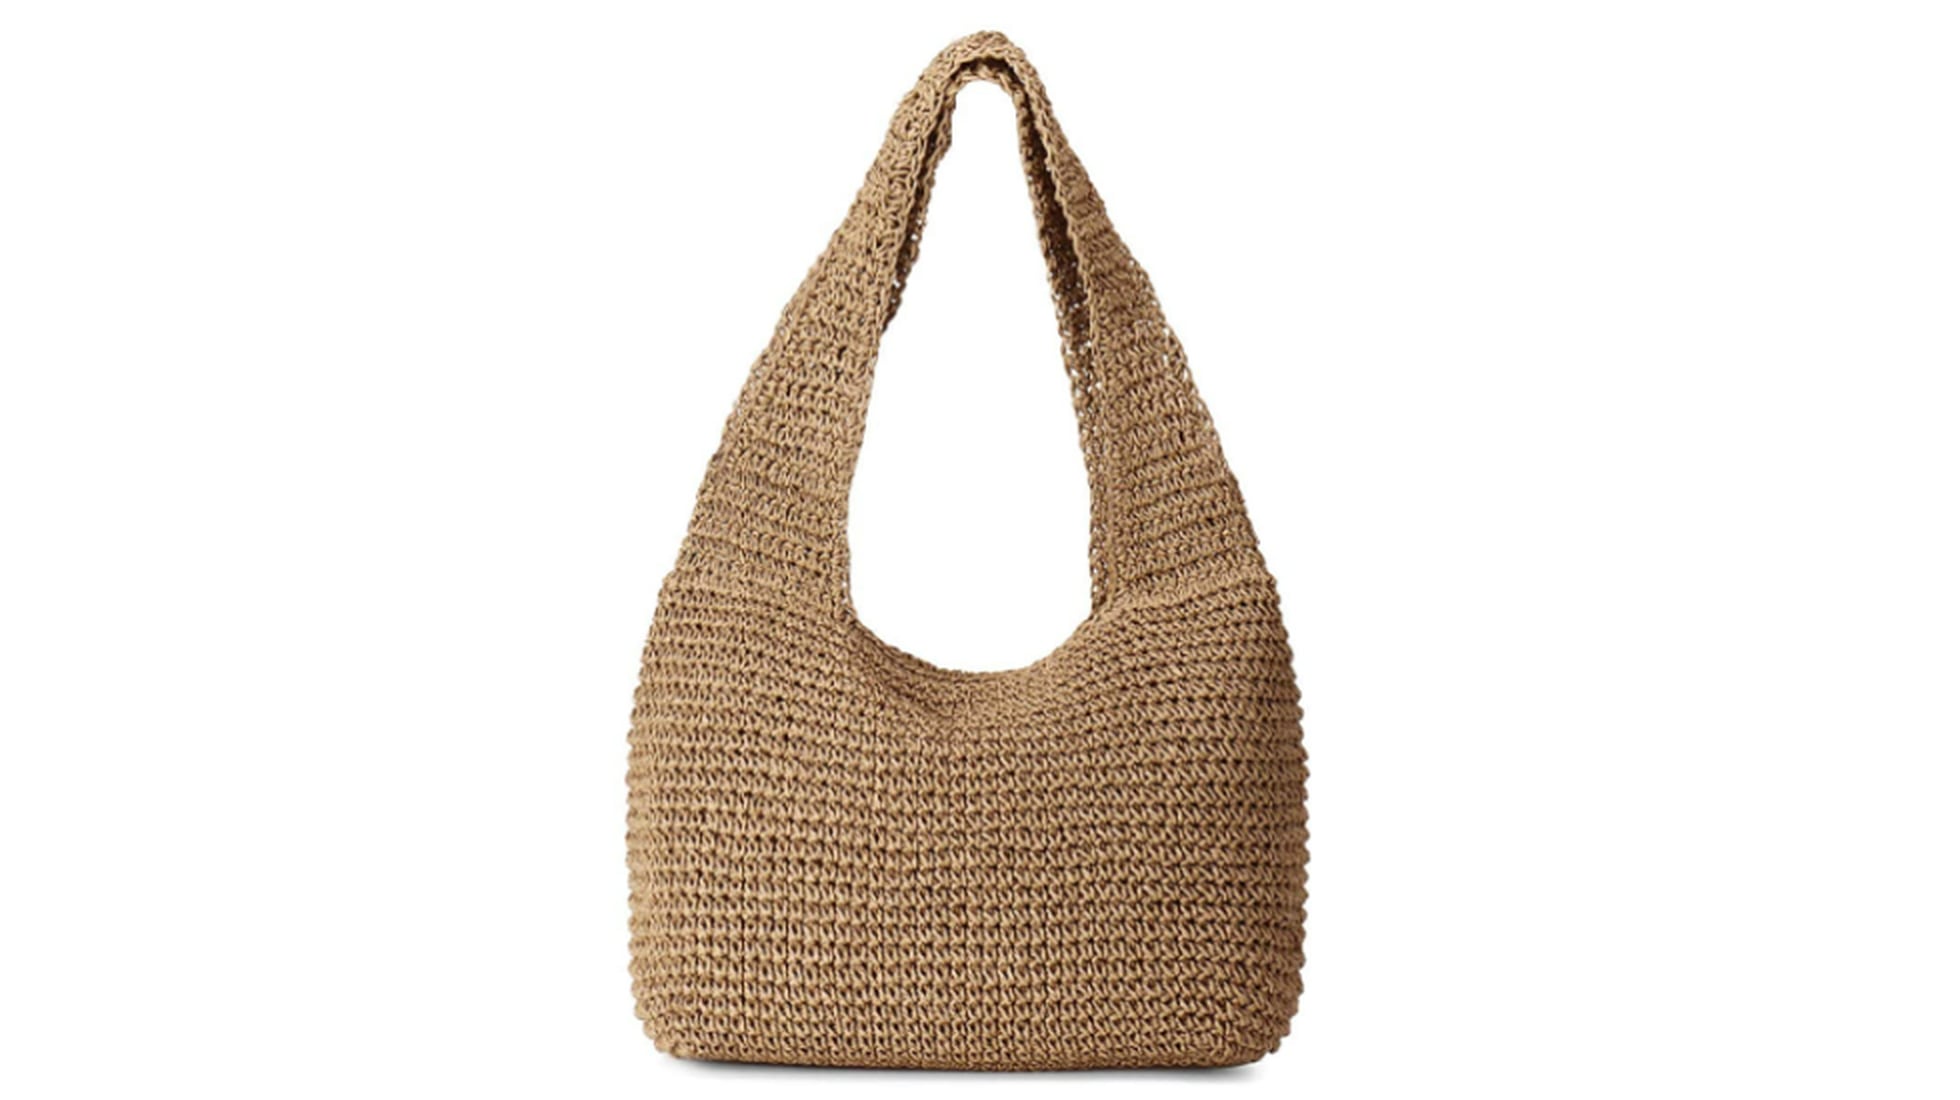 regalo ideal para mujer o niña bolso bandolera de bambú tejido a mano vacaciones de paja beige para viajes Fancylande Bolso de playa de mimbre redondo 